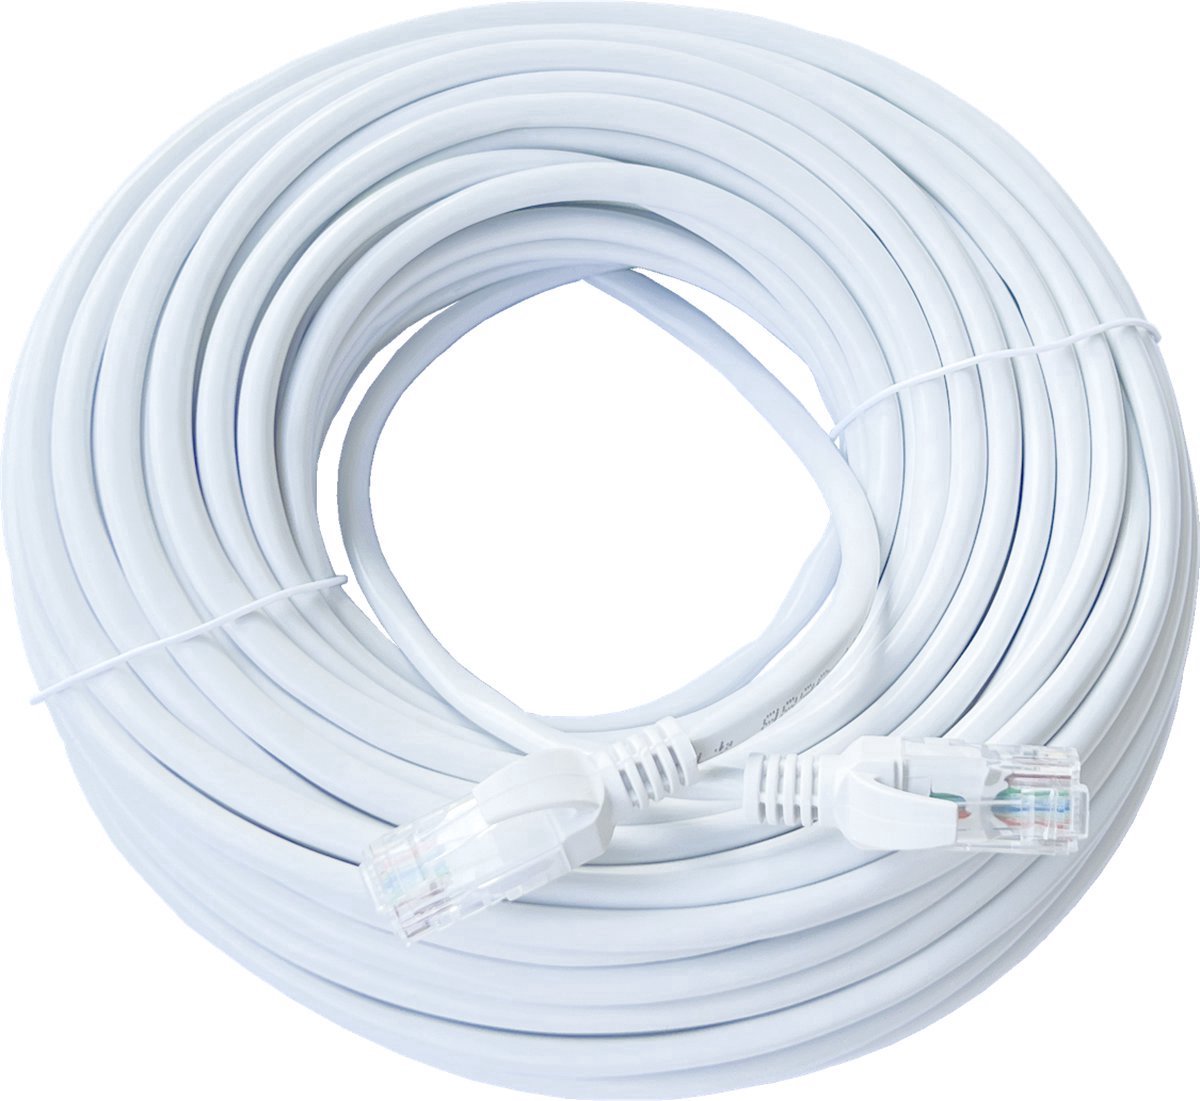 Internetkabel - internetsnoer - Ethernet kabel - netwerk kabel - 10 meter - extra lange internetkabel - CAT6 UTP kabel RJ45 - wit -